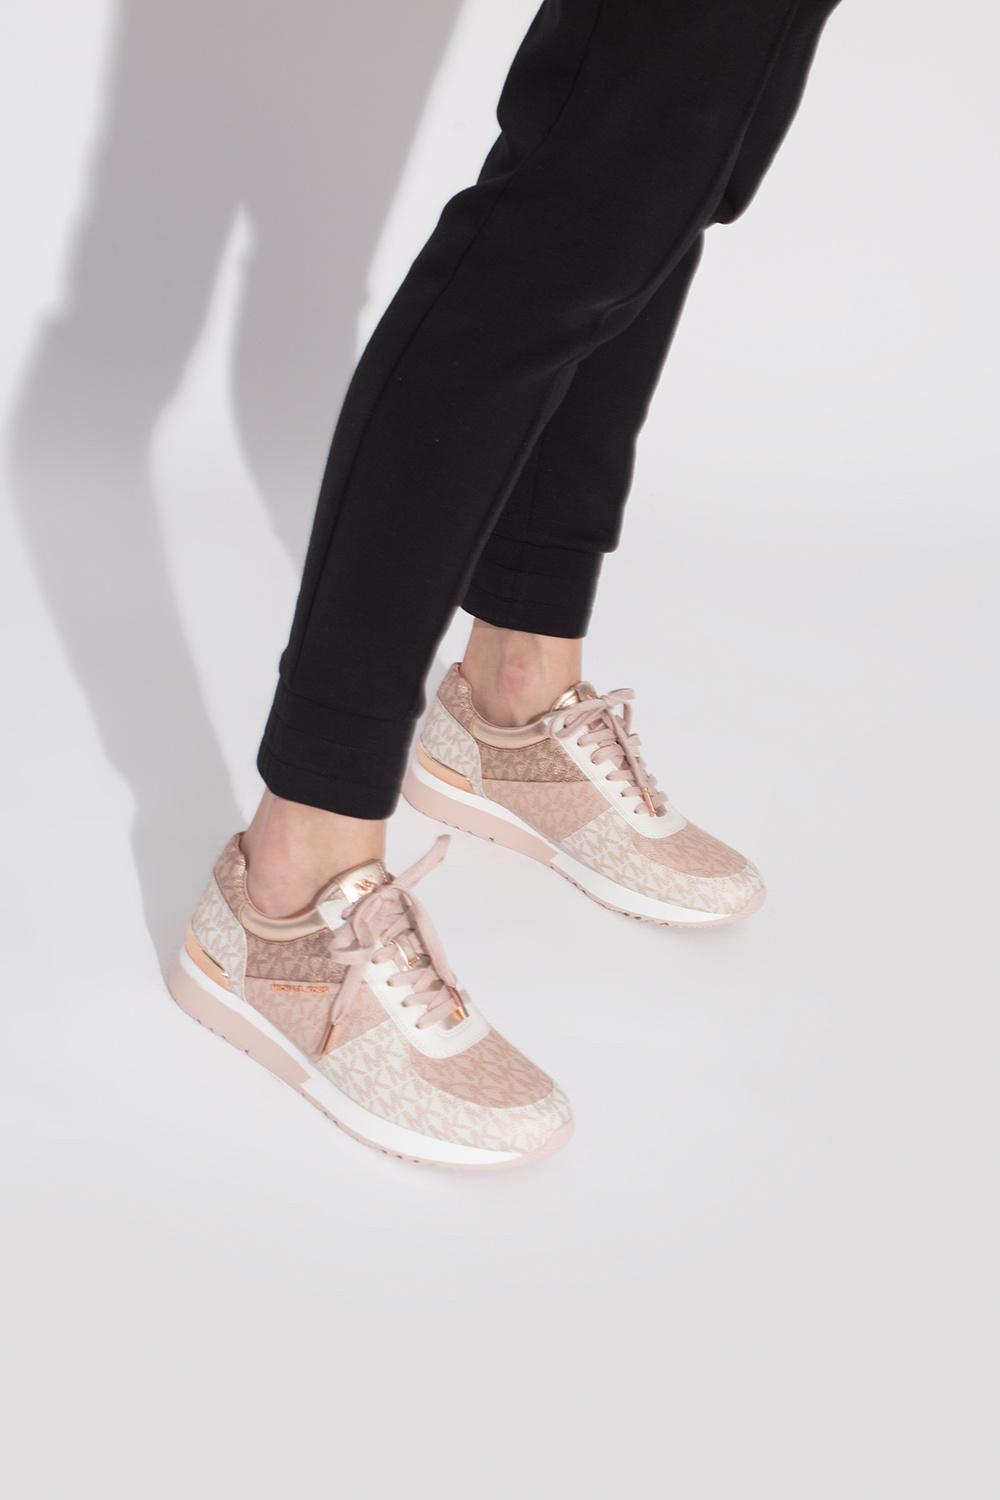 MICHAEL Kors 'allie' Sneakers in Pink | Lyst